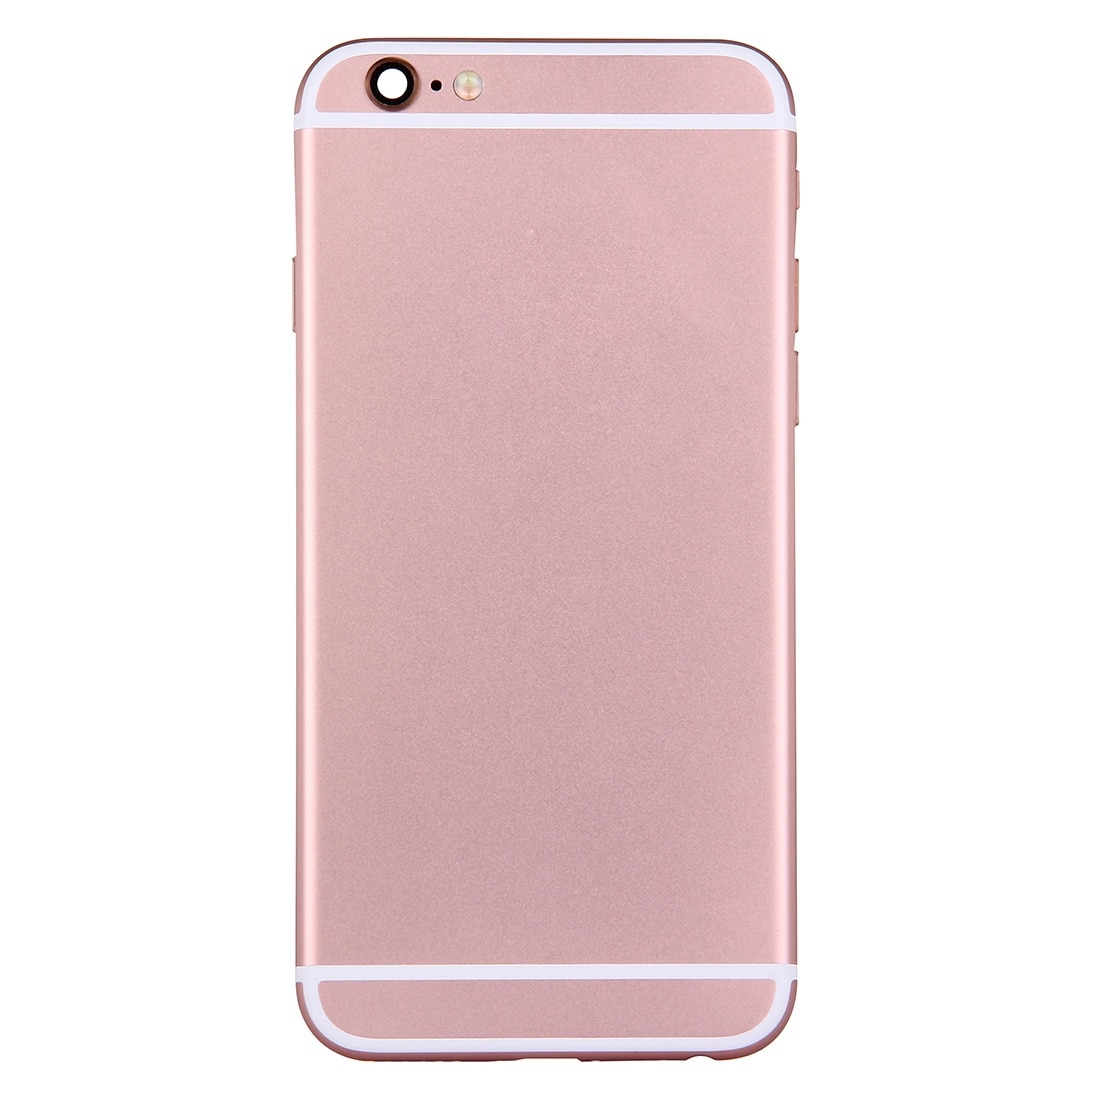 Komplett skallbytte iPhone 6 -Rose Gull